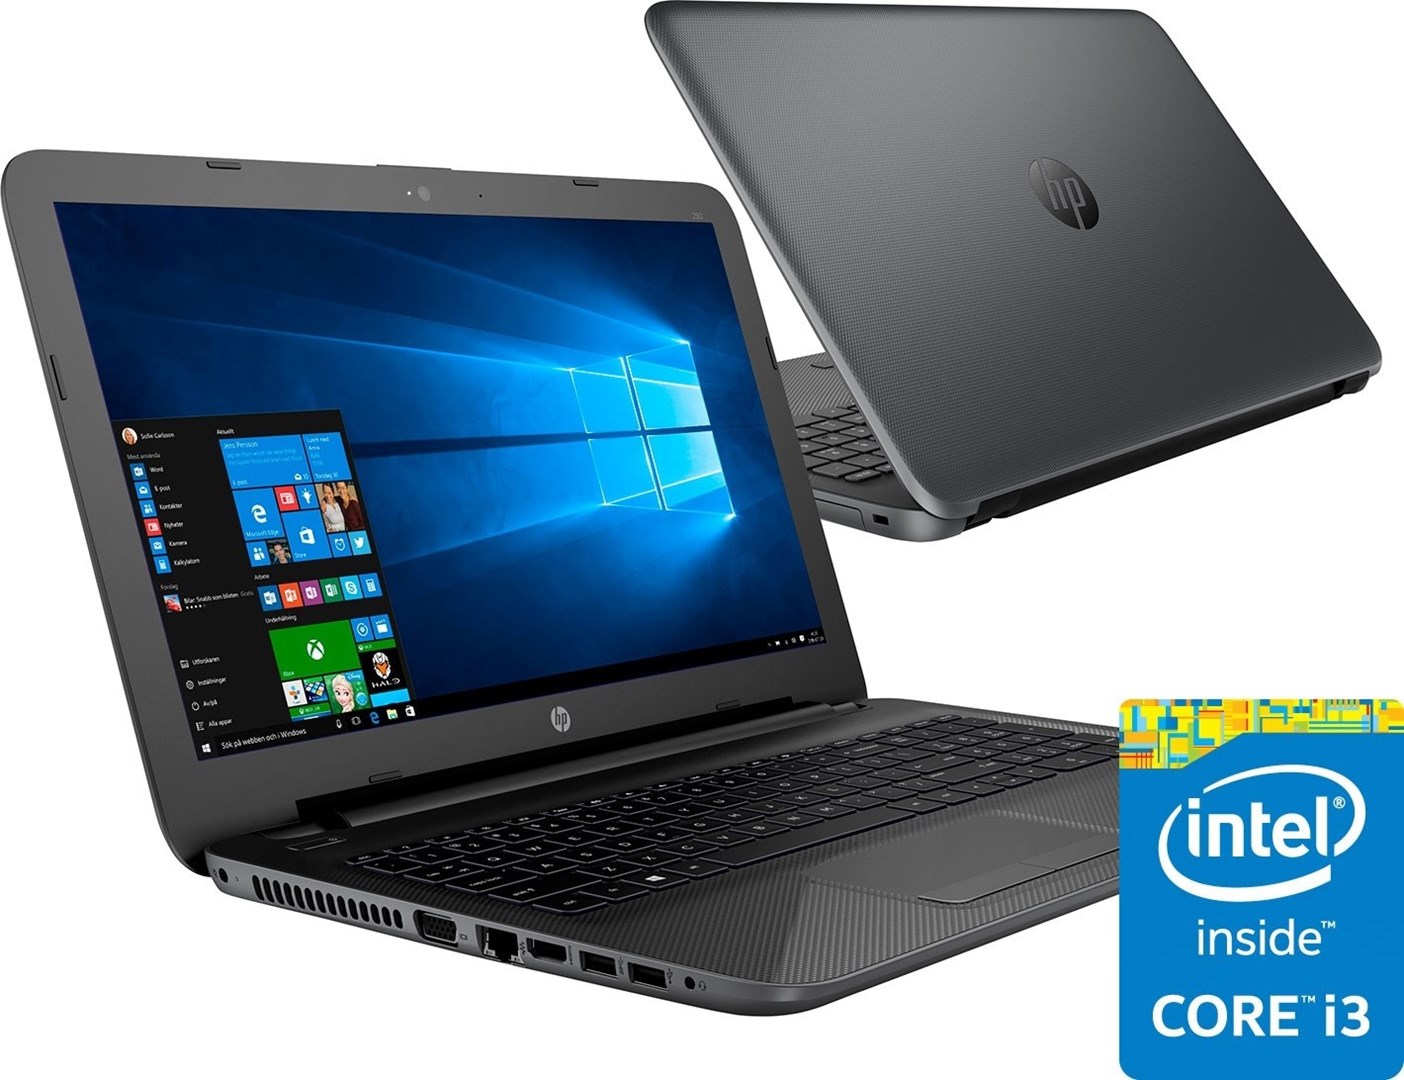 Hp 250 G4 Pålitelig 156 Laptop Fra Hp Med Intel® Core™ I3 Prosessor 6051